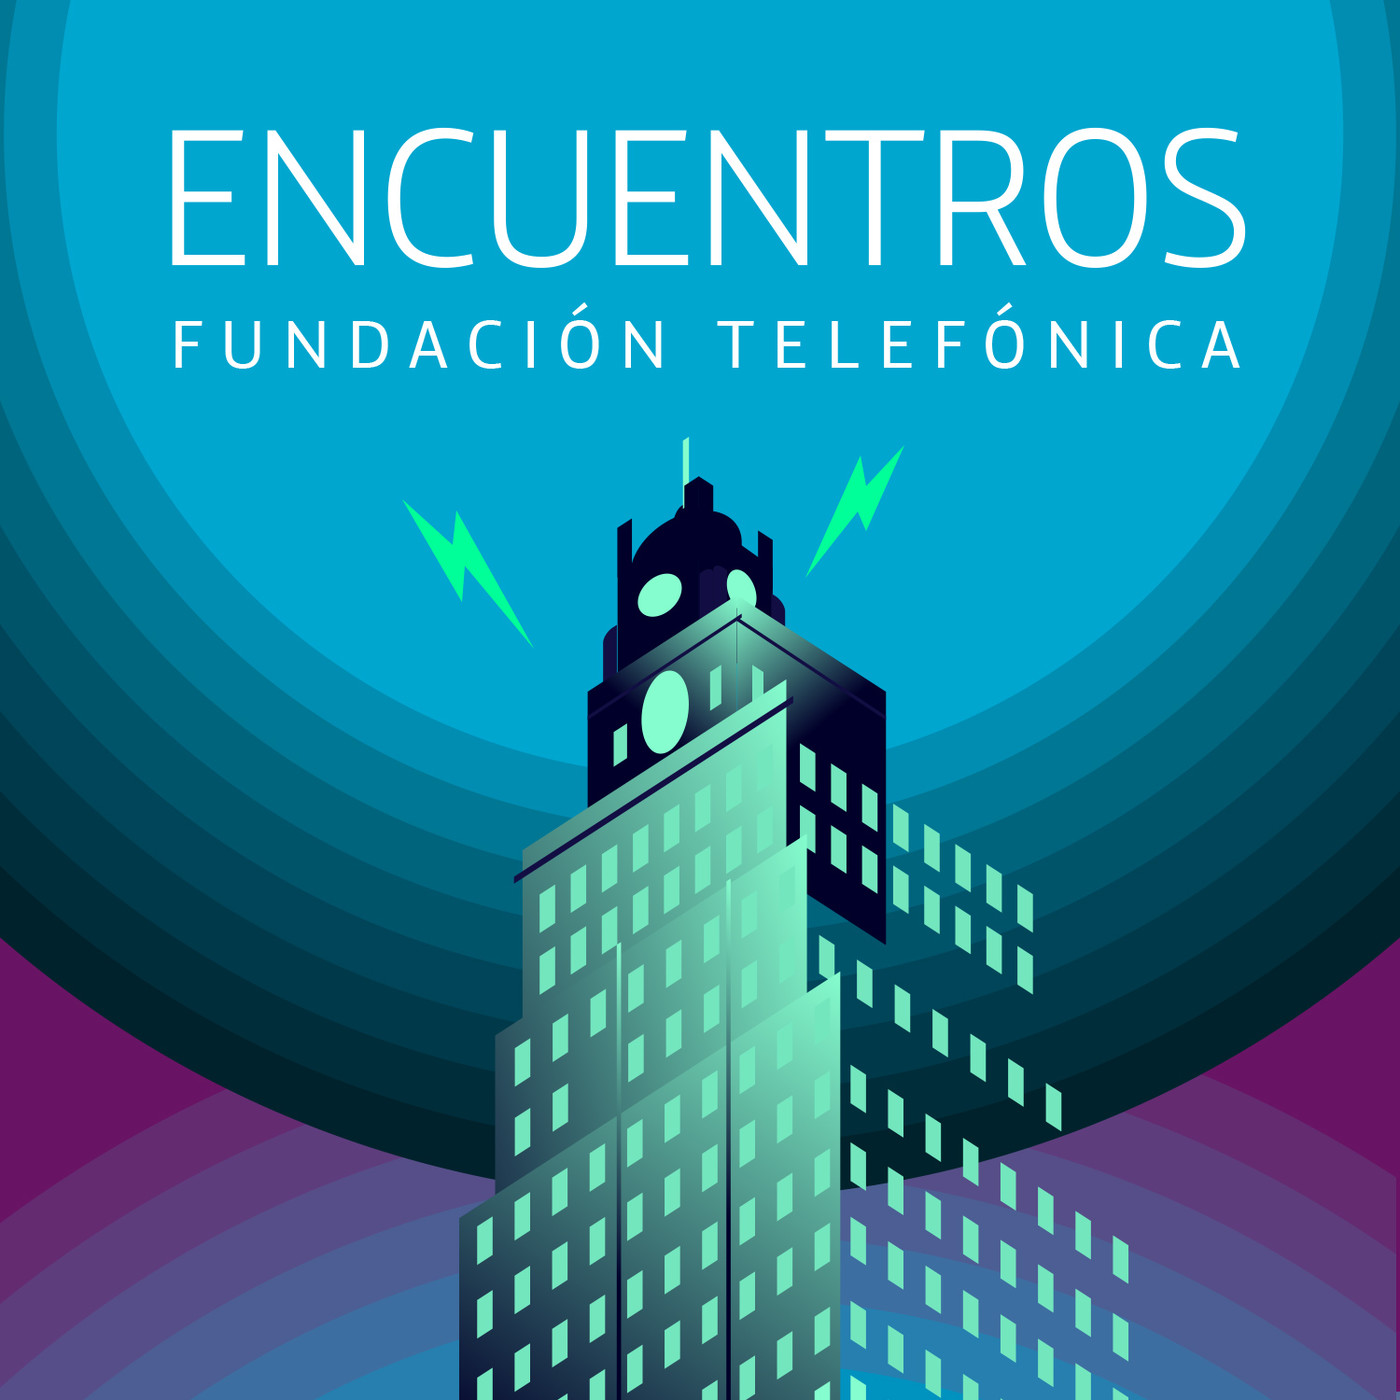 Encuentros Fundación Telefónica